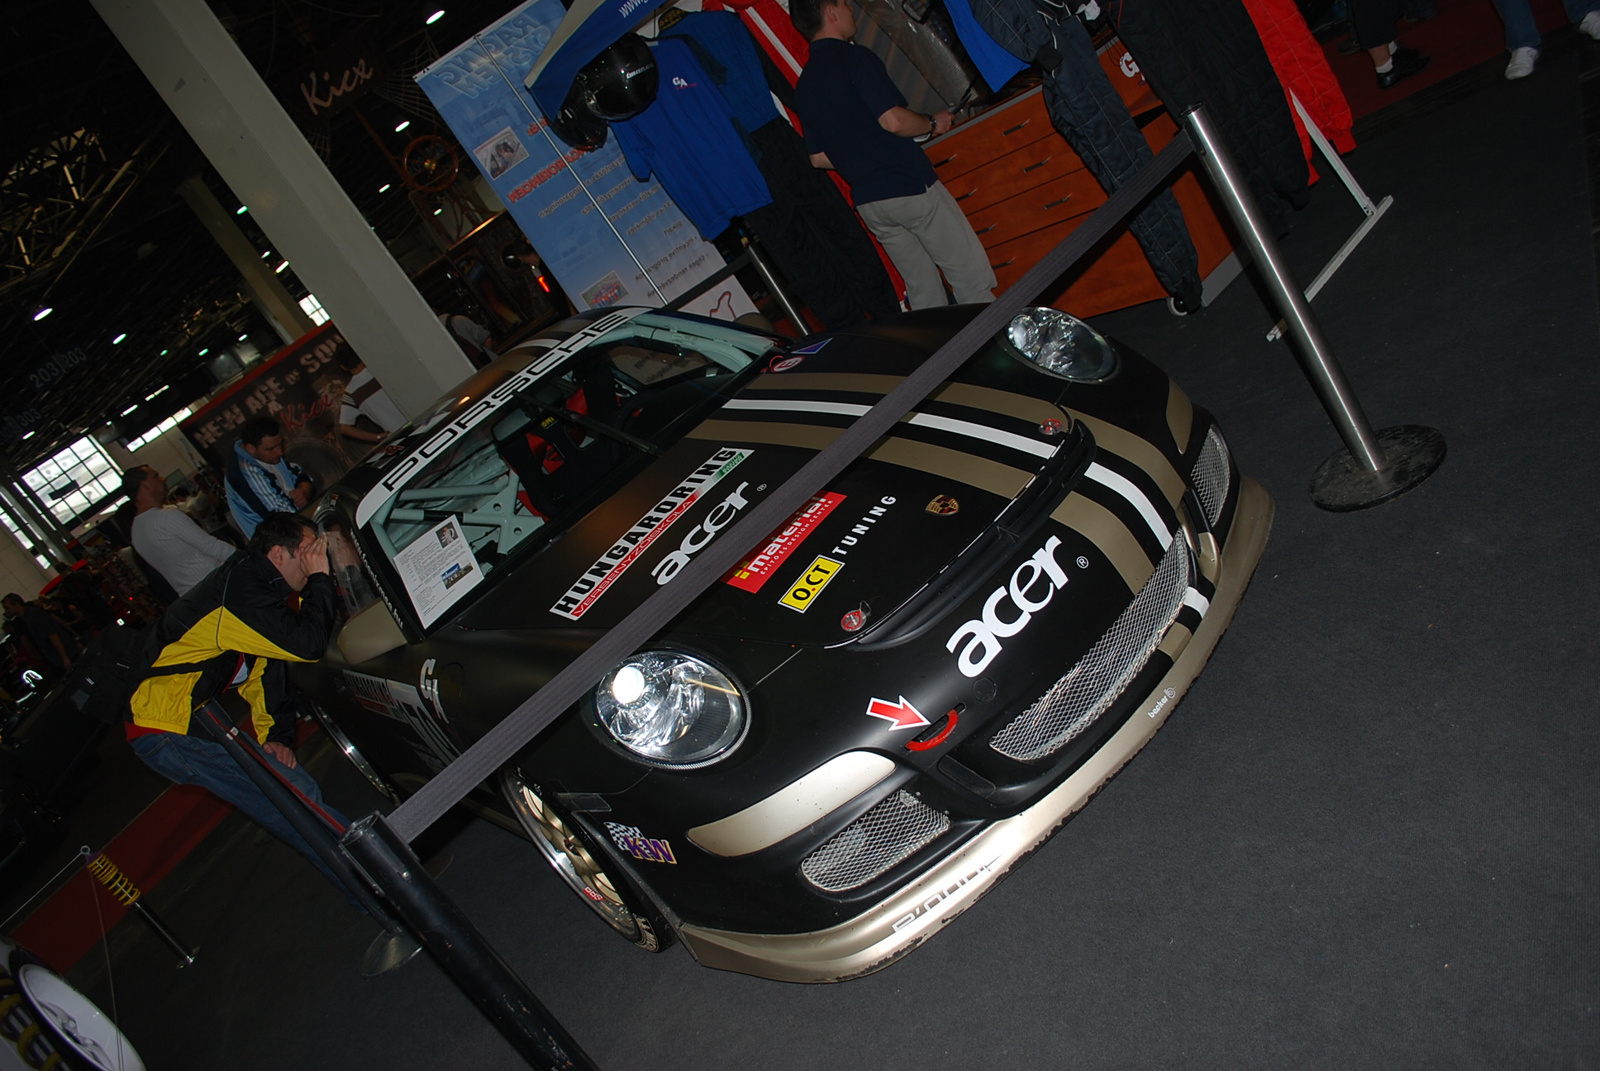 Porsche 997 GT3 CUP